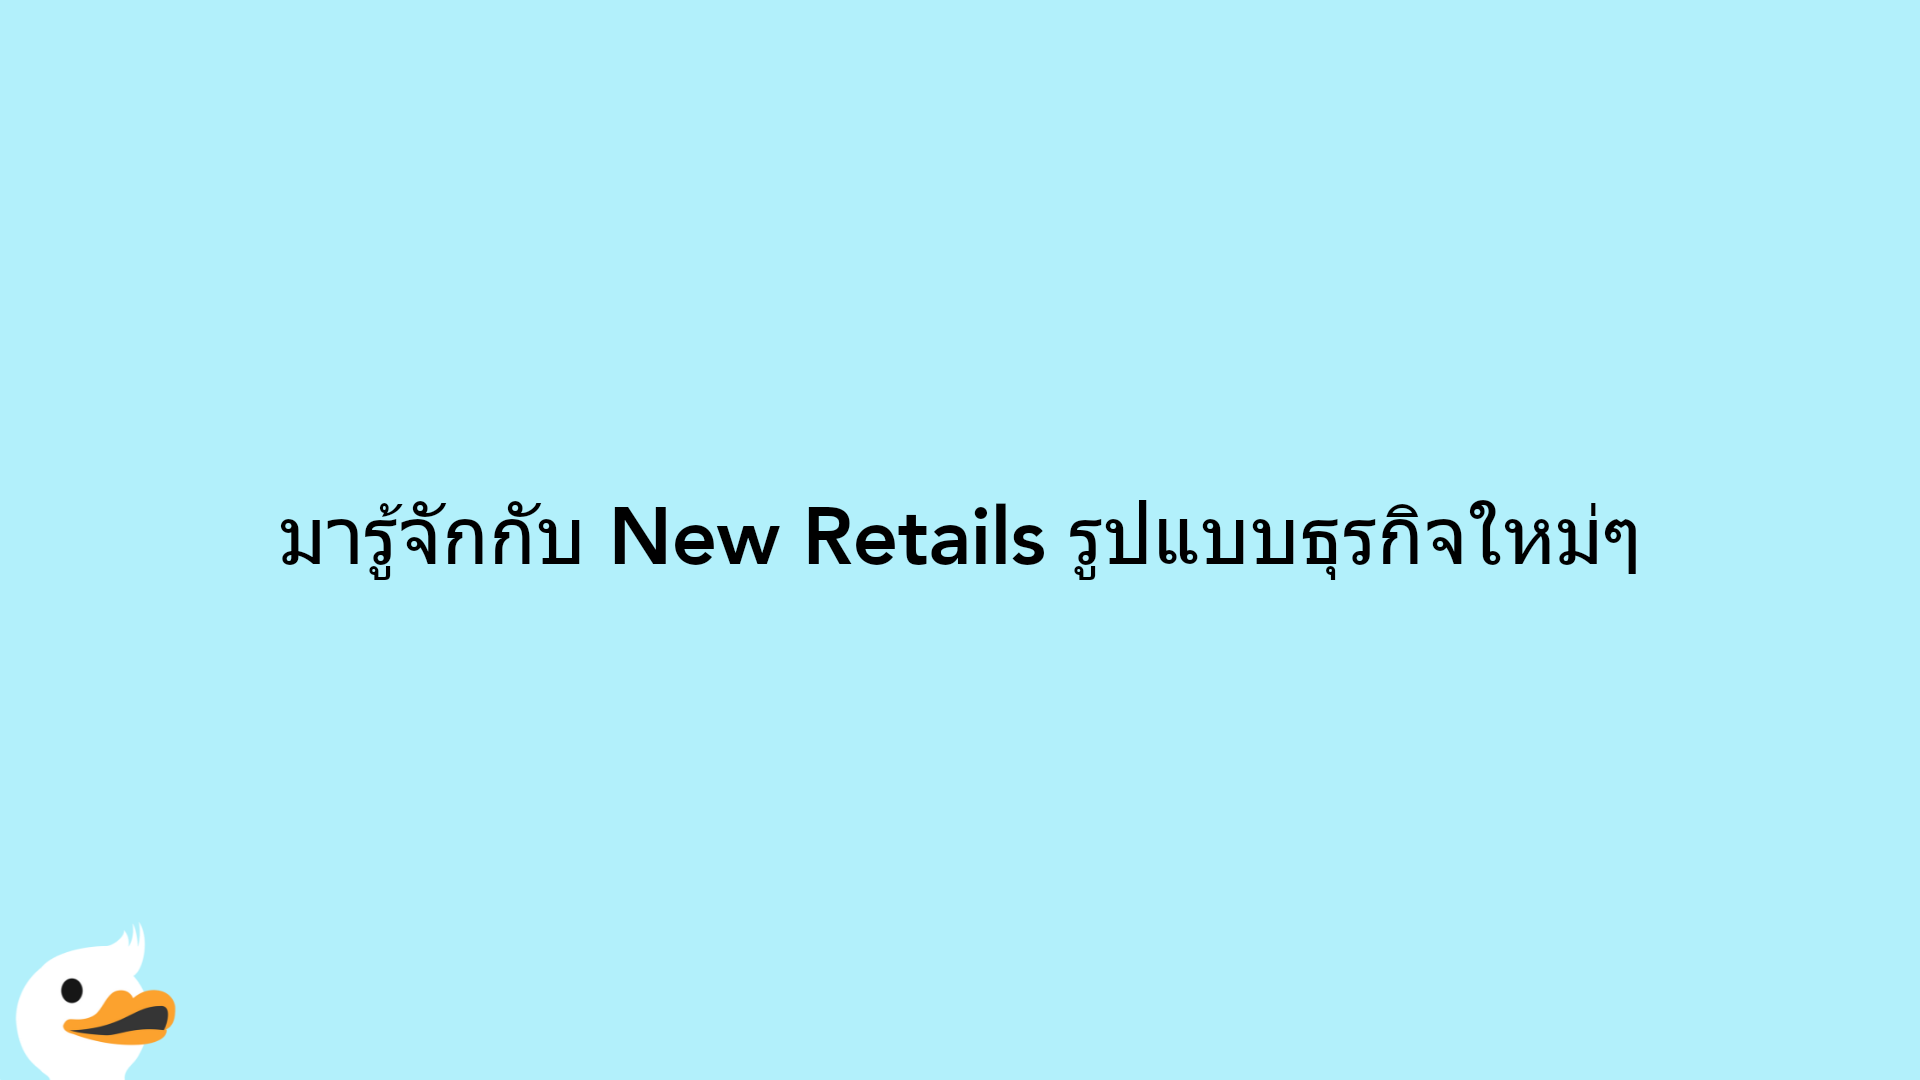 มารู้จักกับ New Retails รูปแบบธุรกิจใหม่ๆ